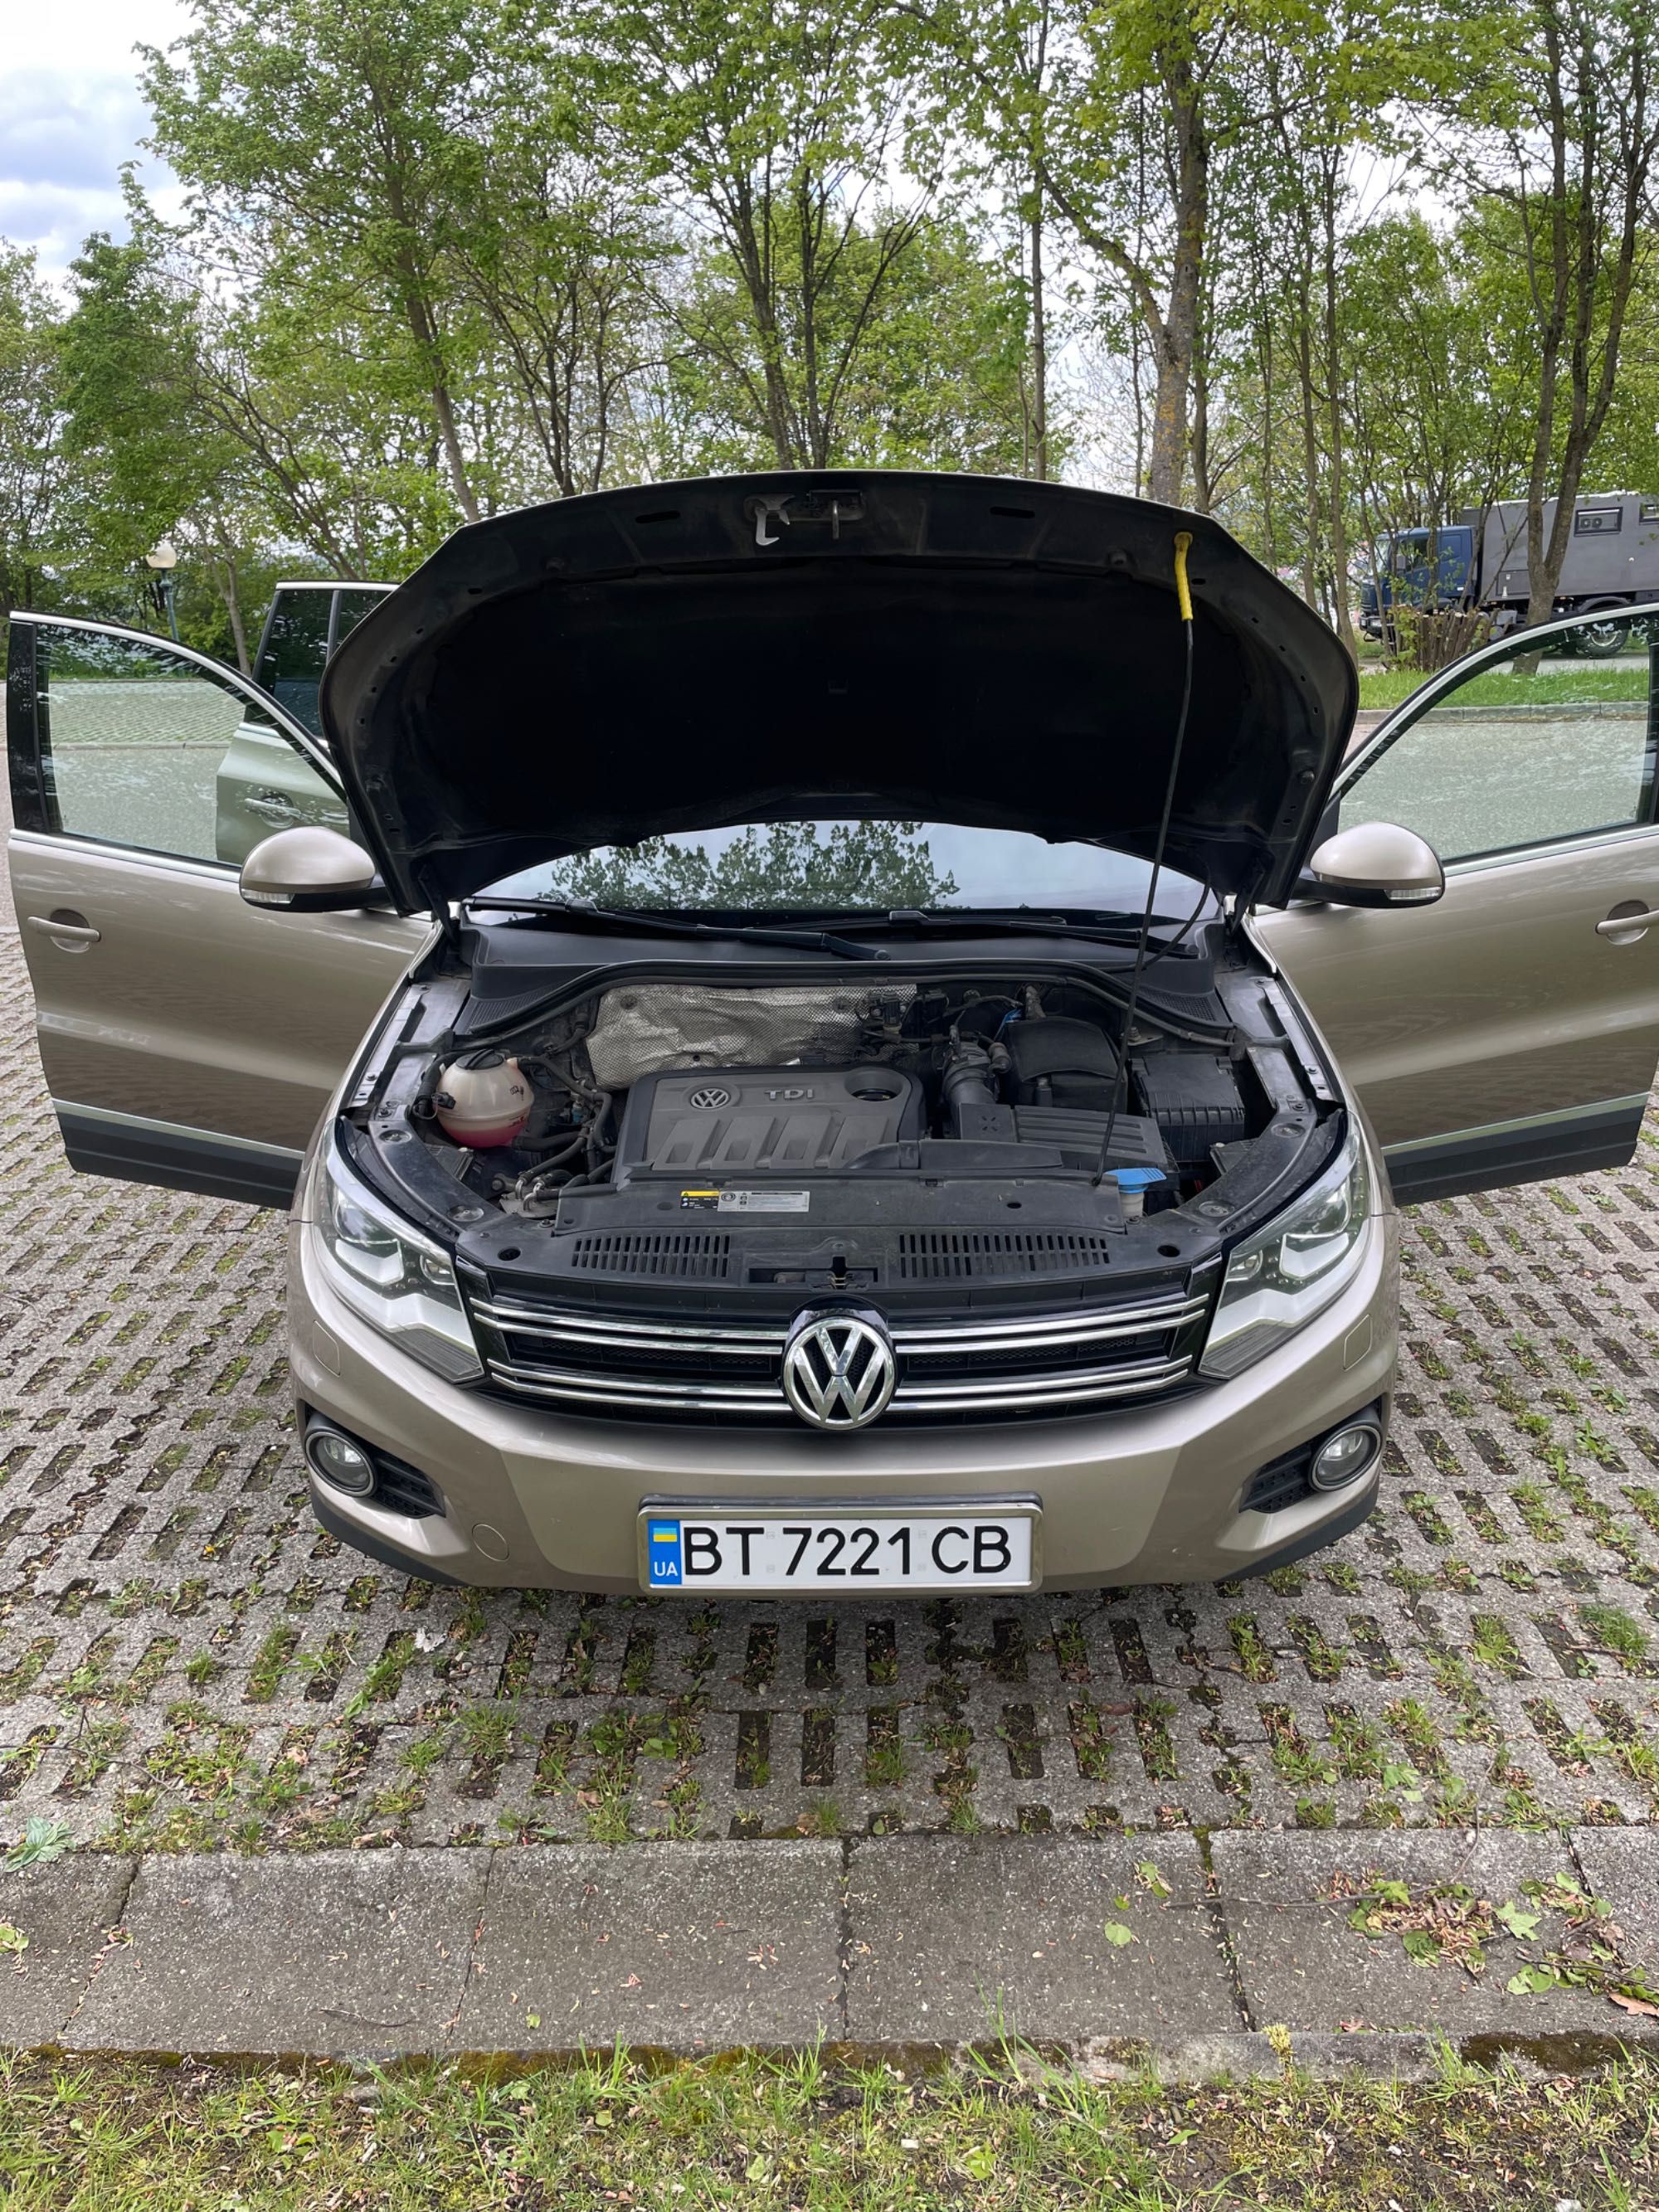 VW Tiguan 2013 4 Motion 2.0 TDI